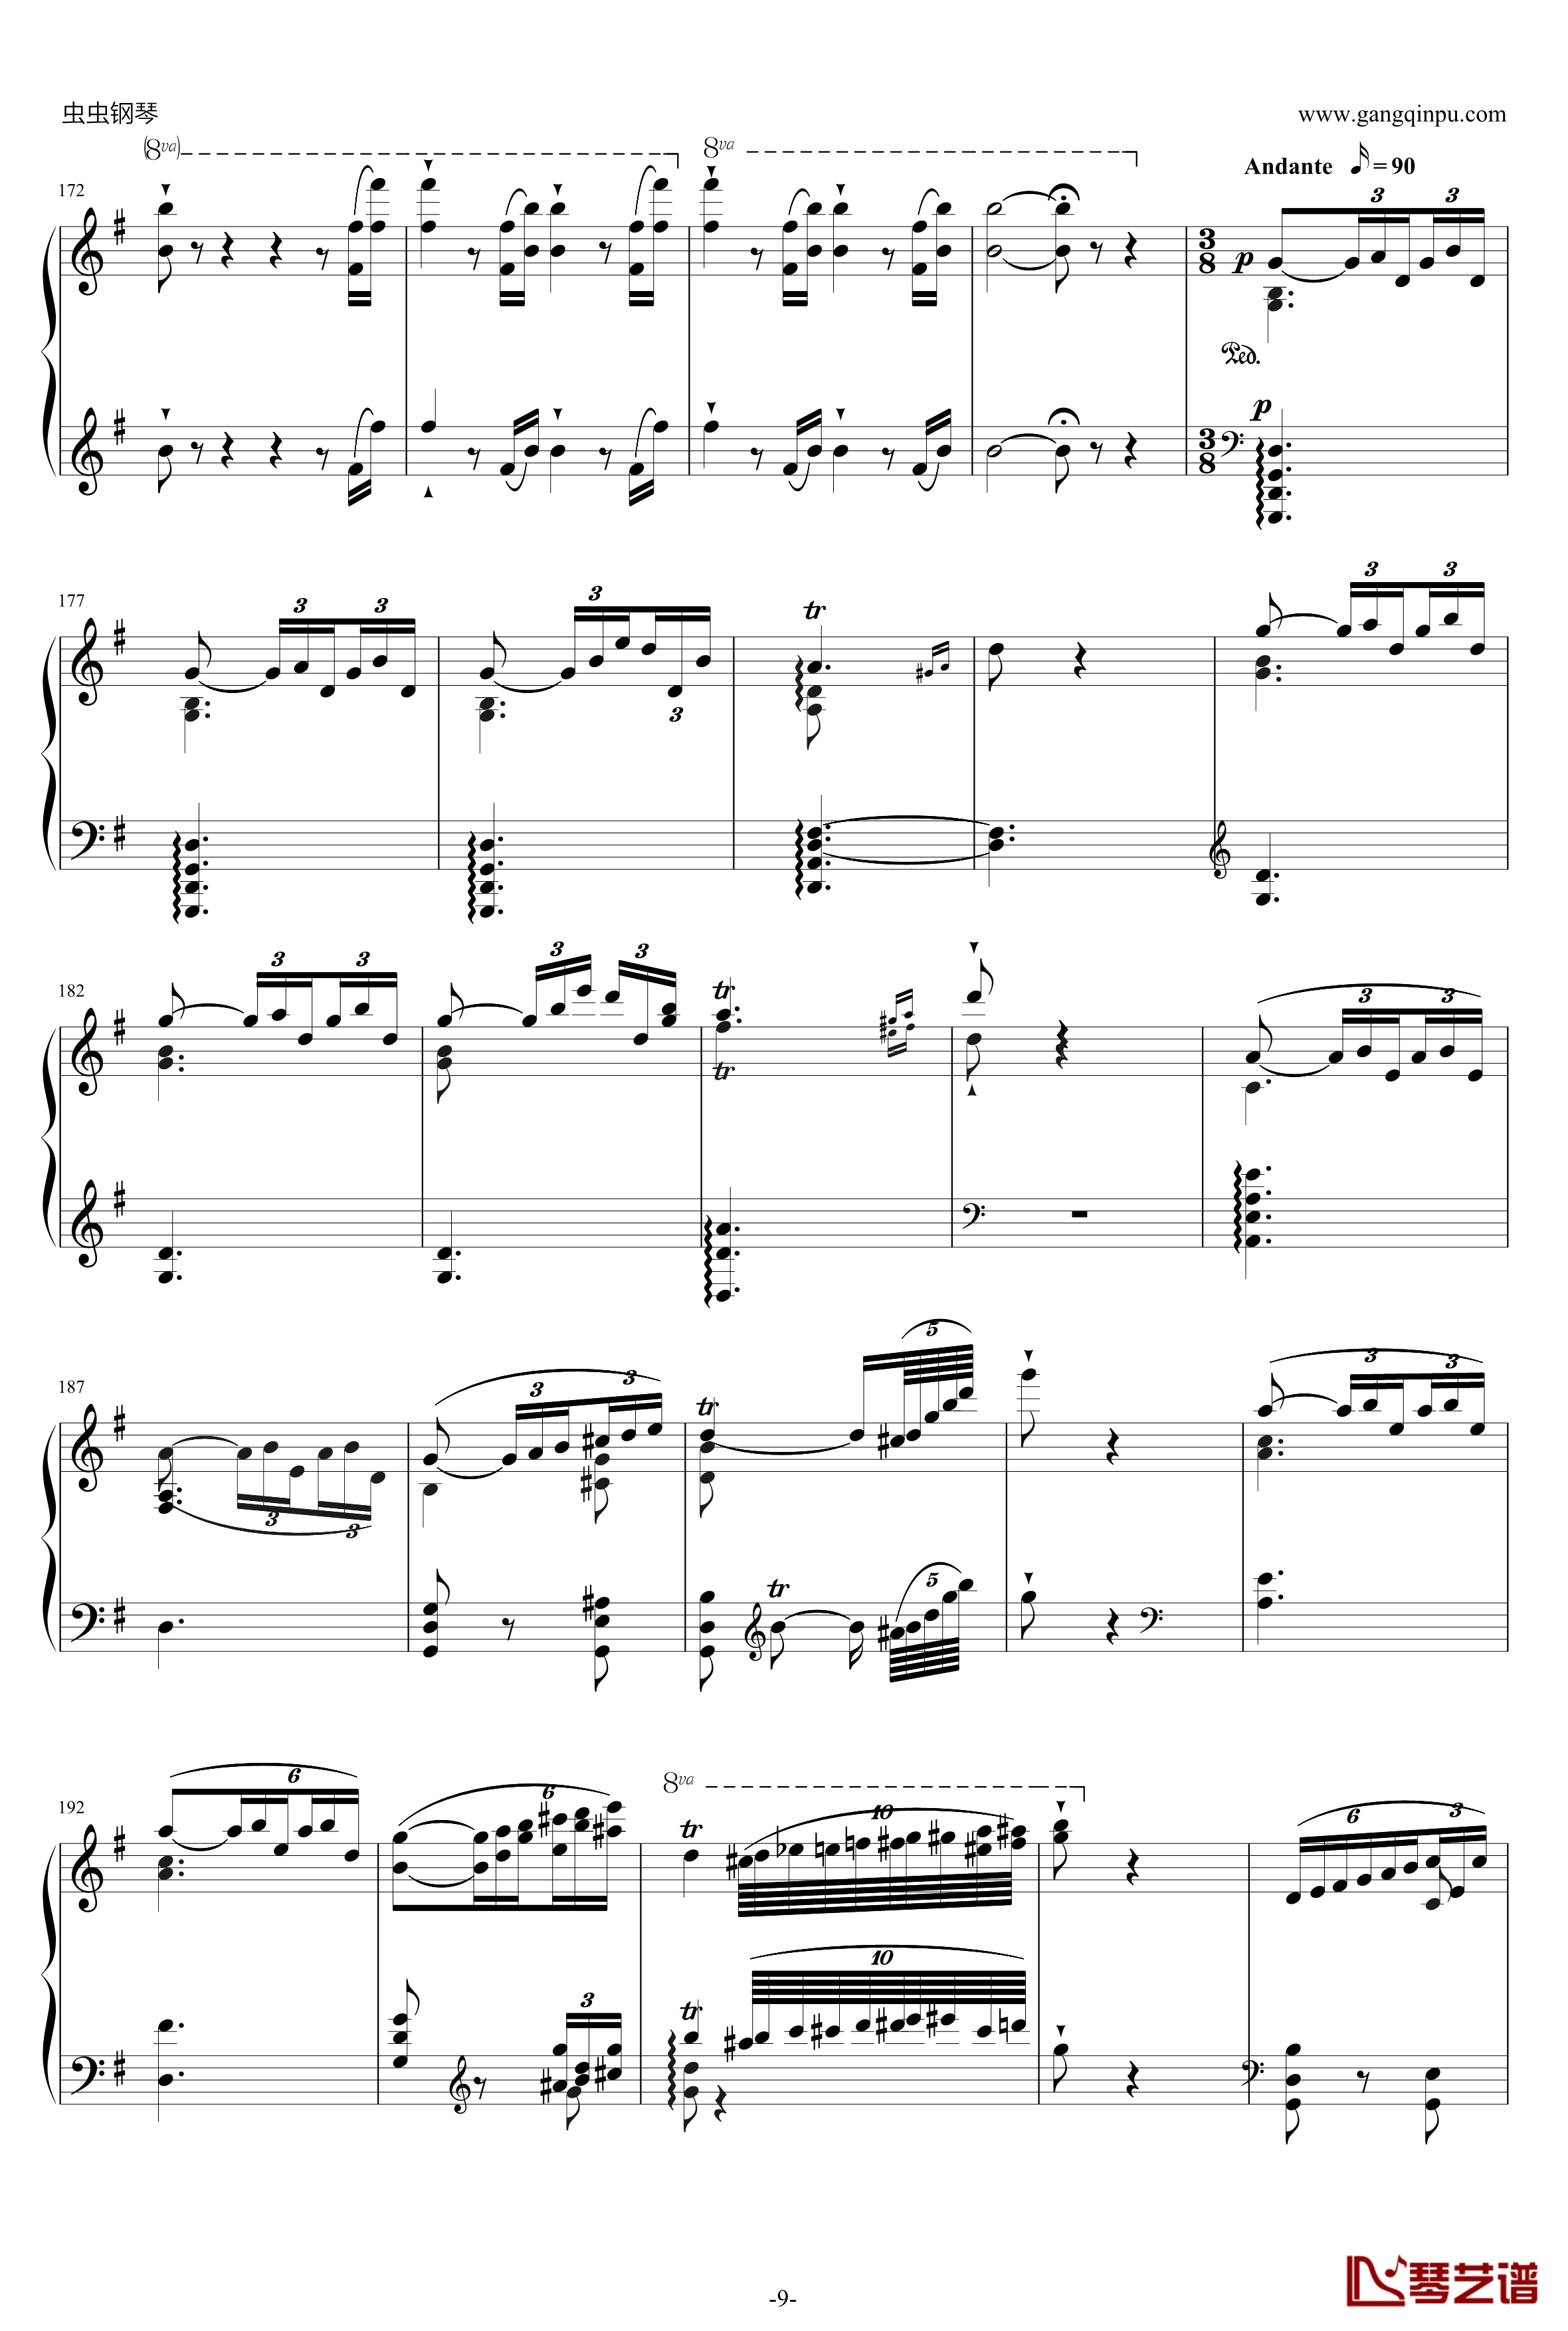 威廉·退尔序曲钢琴谱-李斯特S.5529